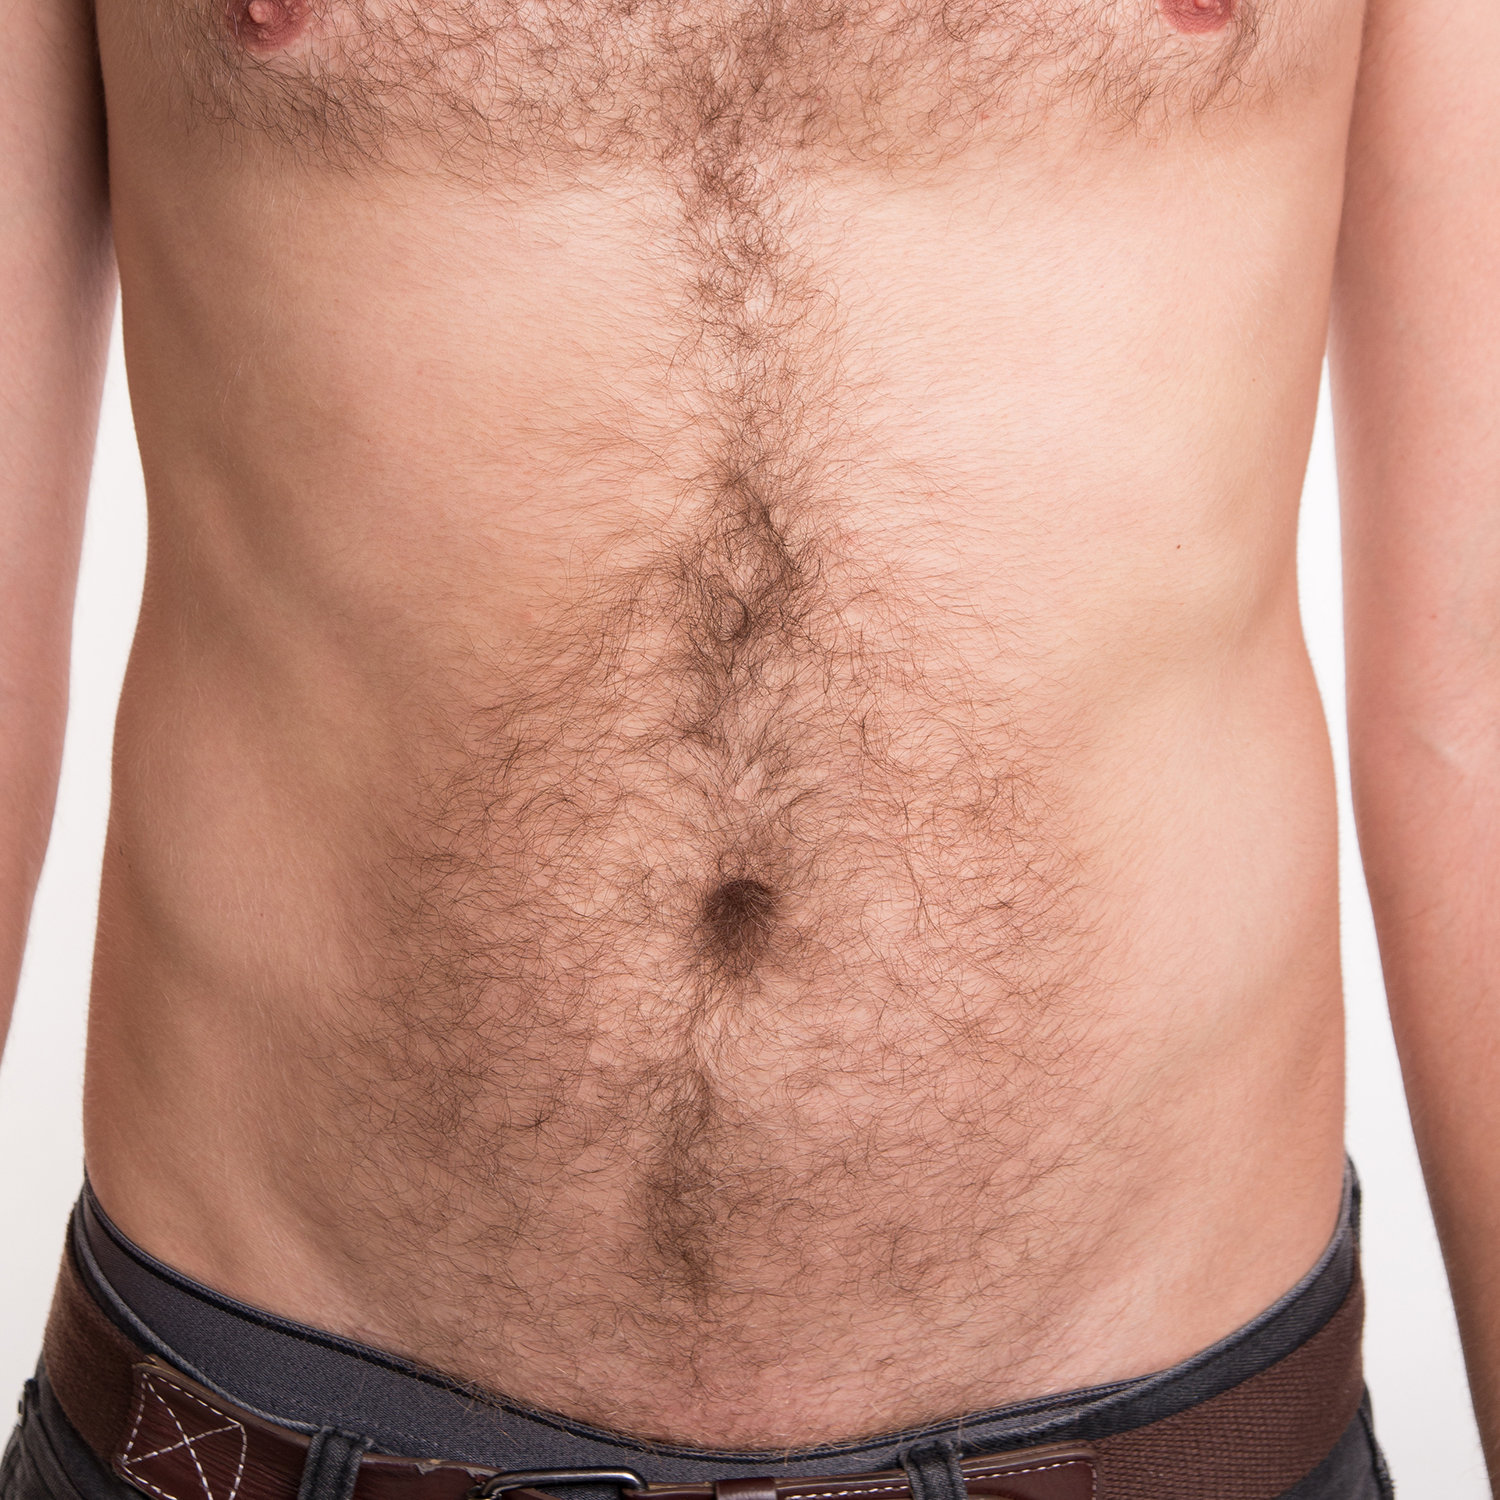 волосы на животе и груди у мужчин фото 3